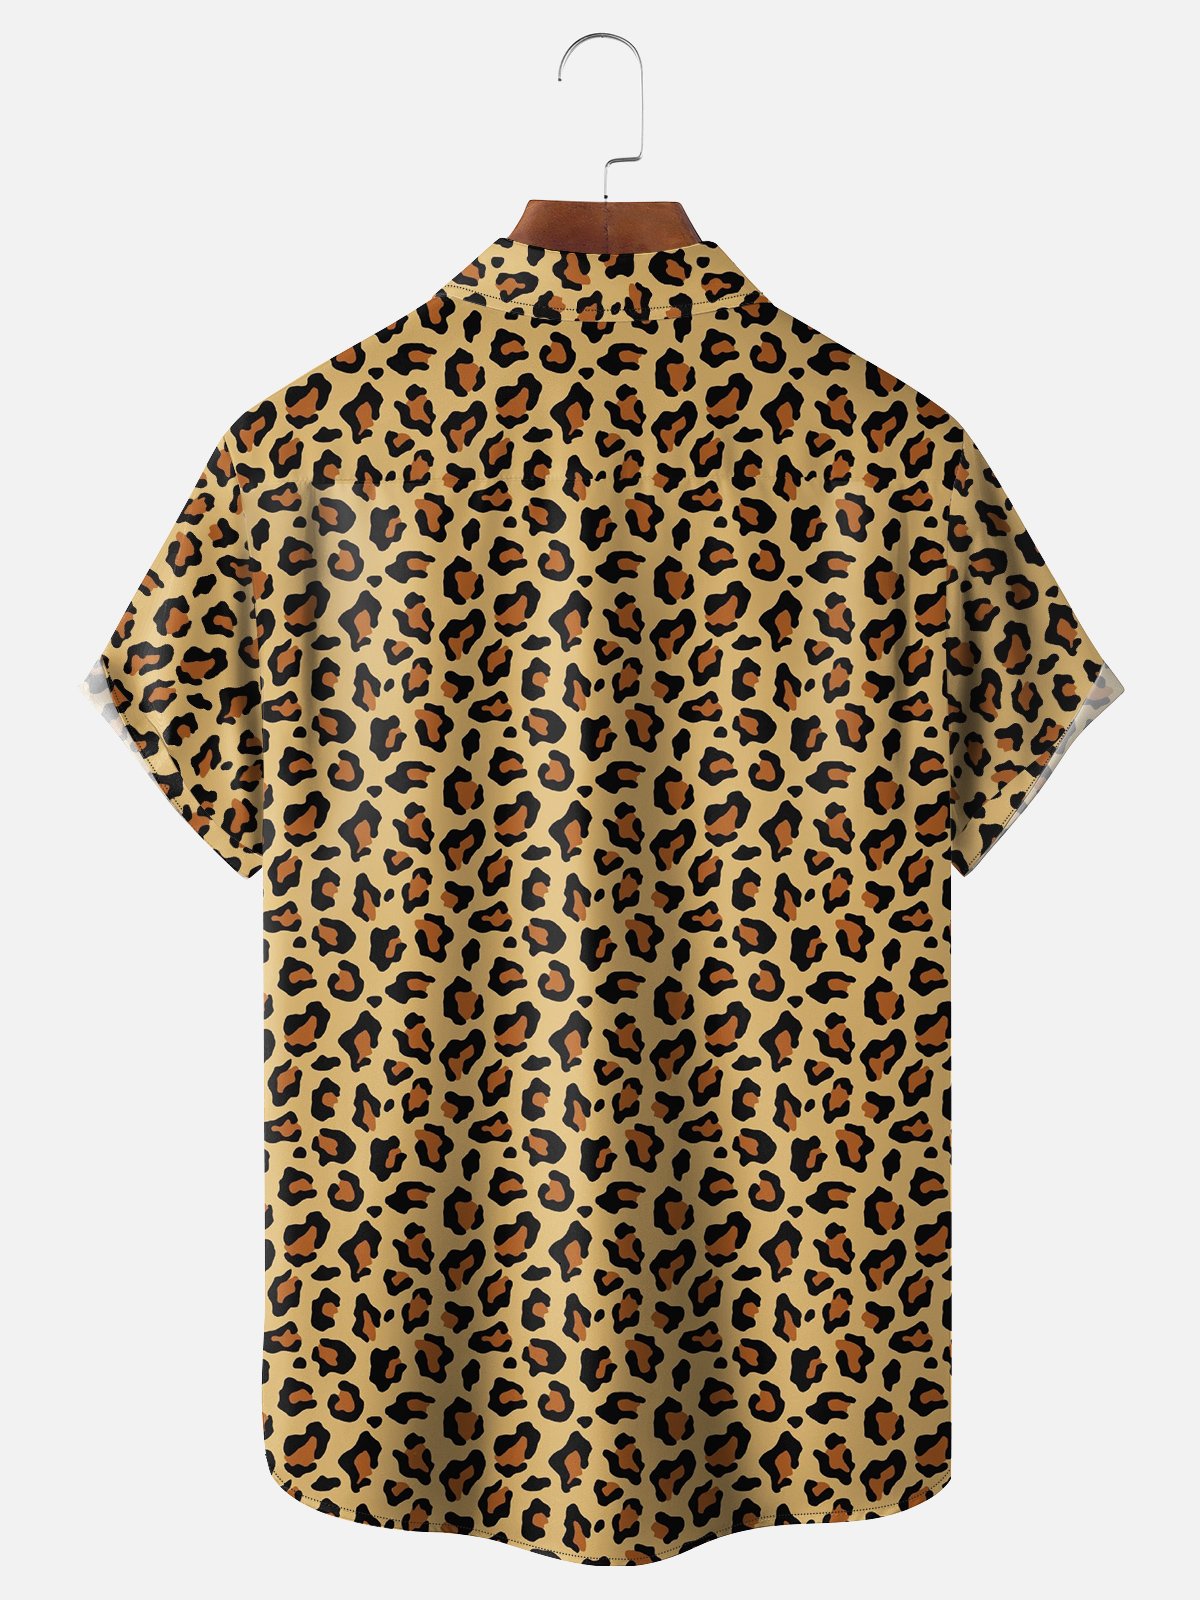 Moisture-Wicking Leopard Print Shirt